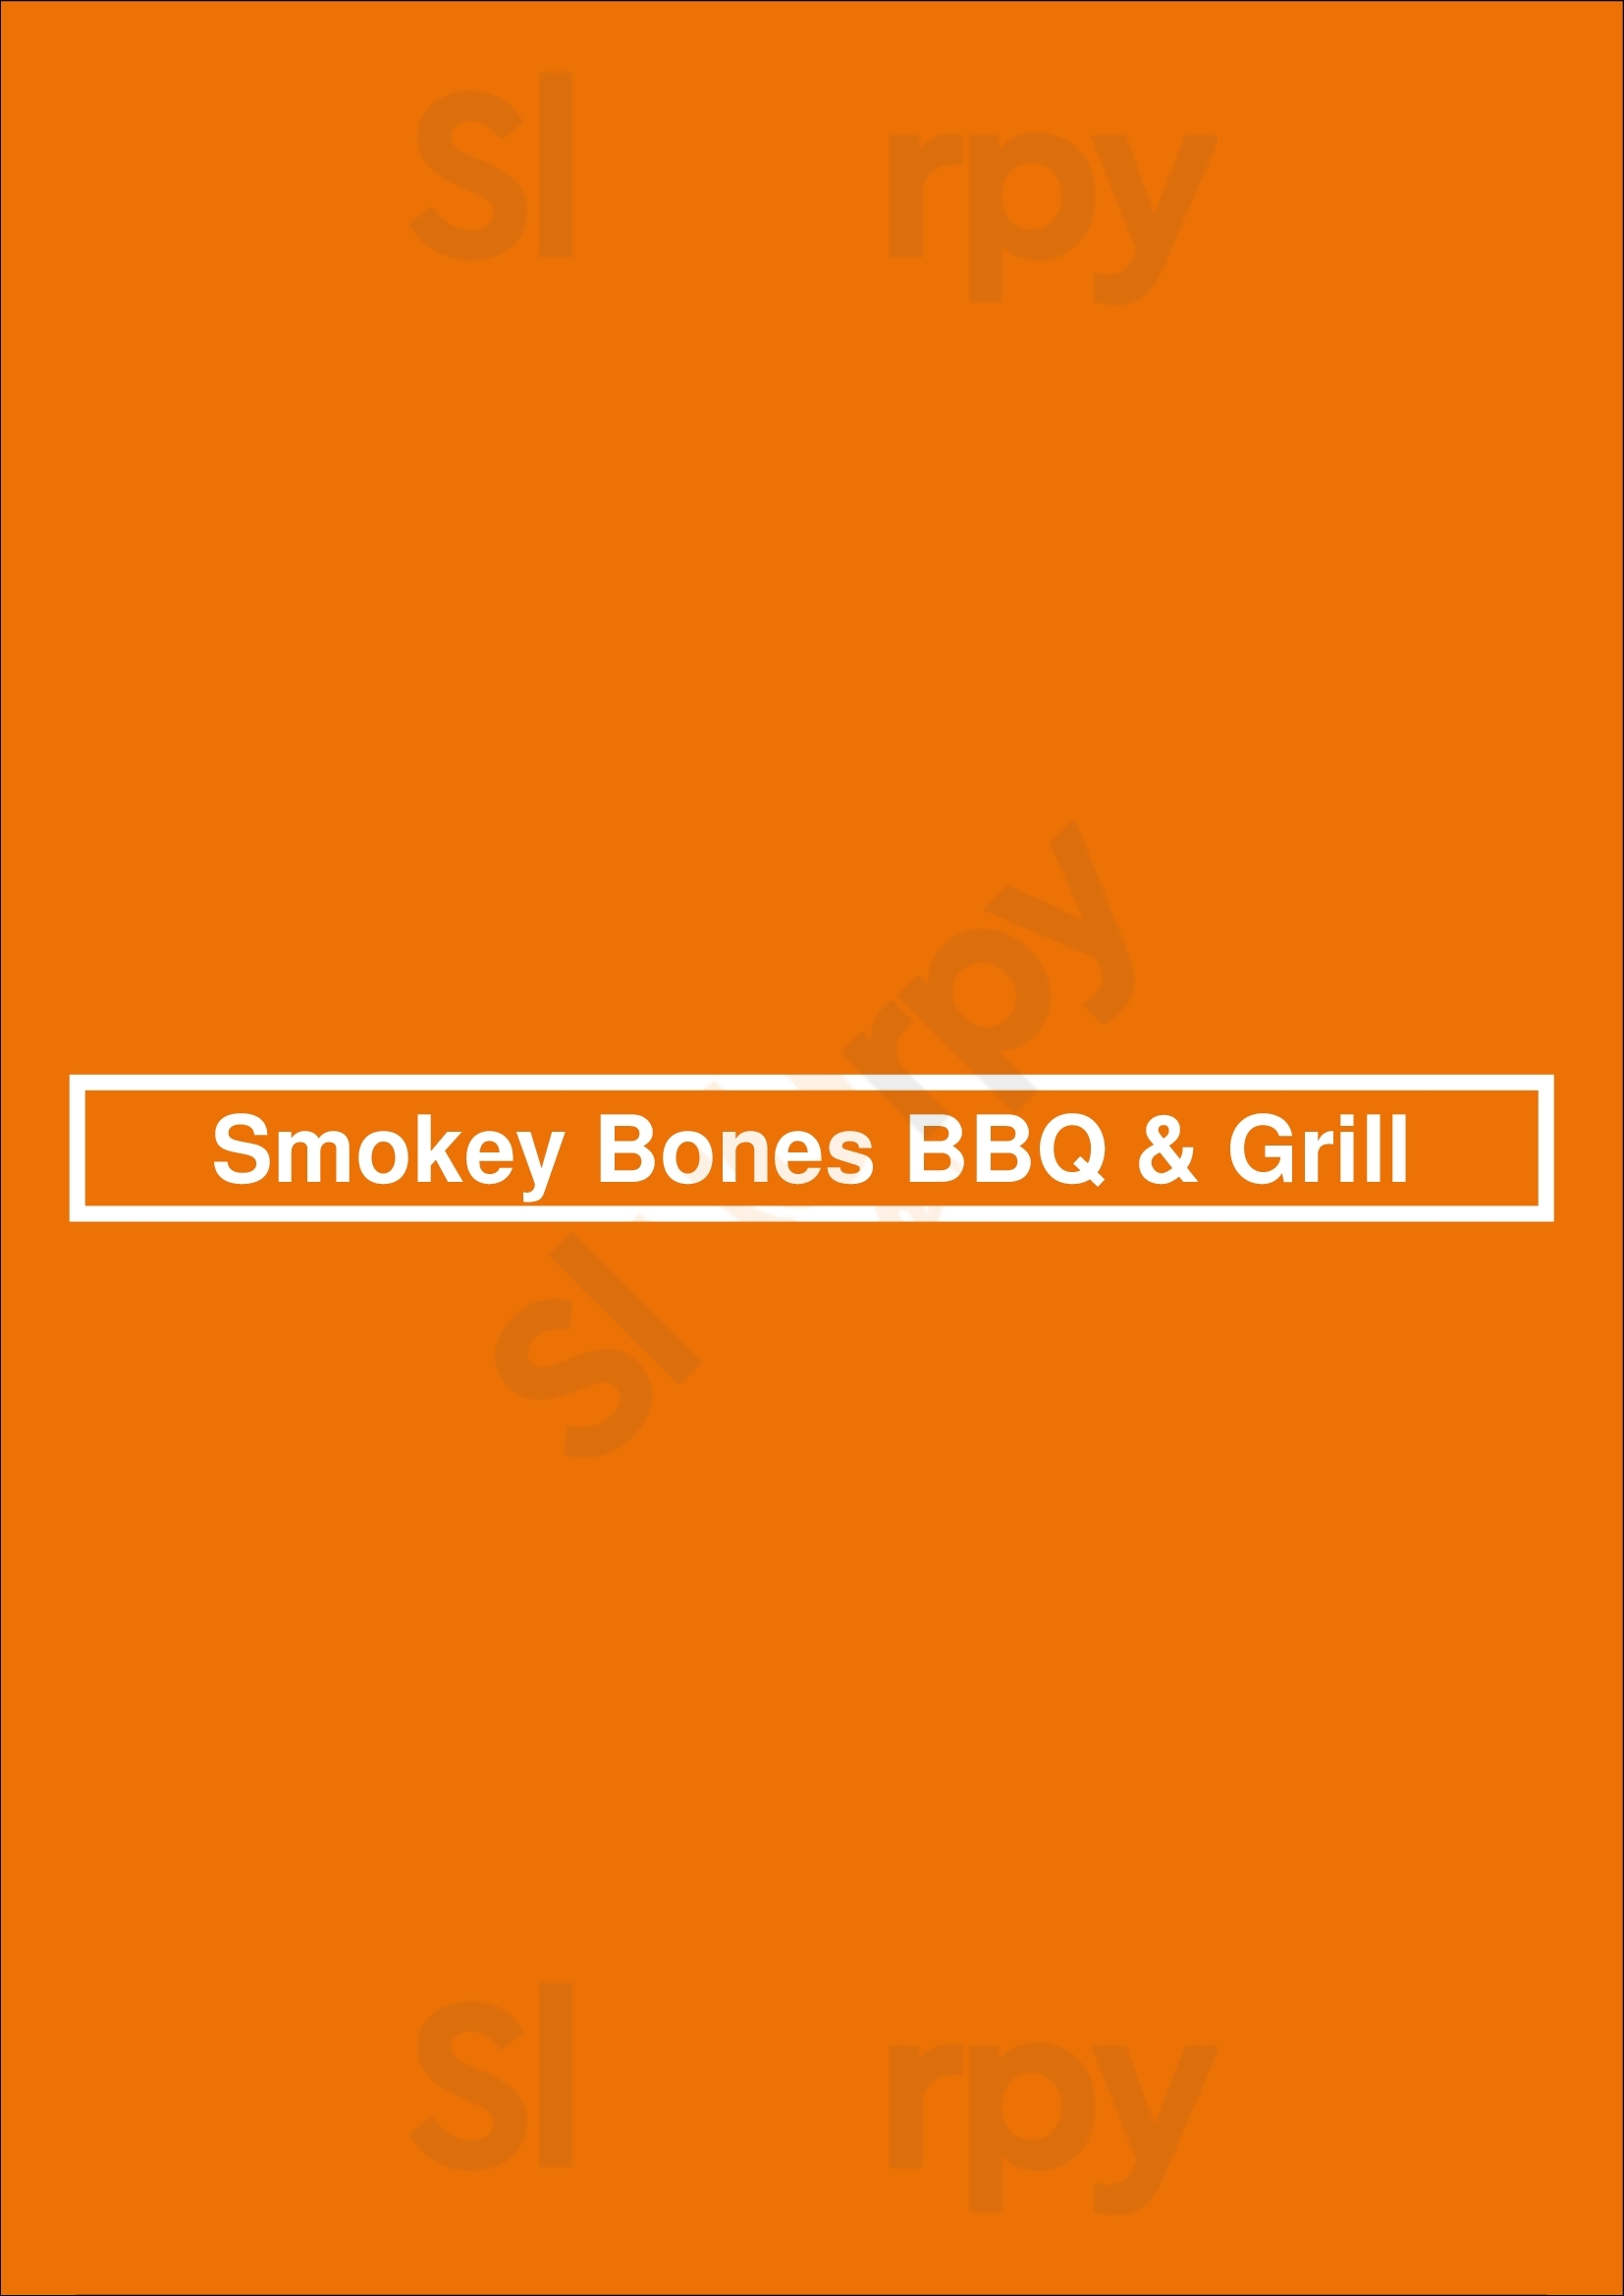 Smokey Bones Jeffersontown Louisville Menu - 1